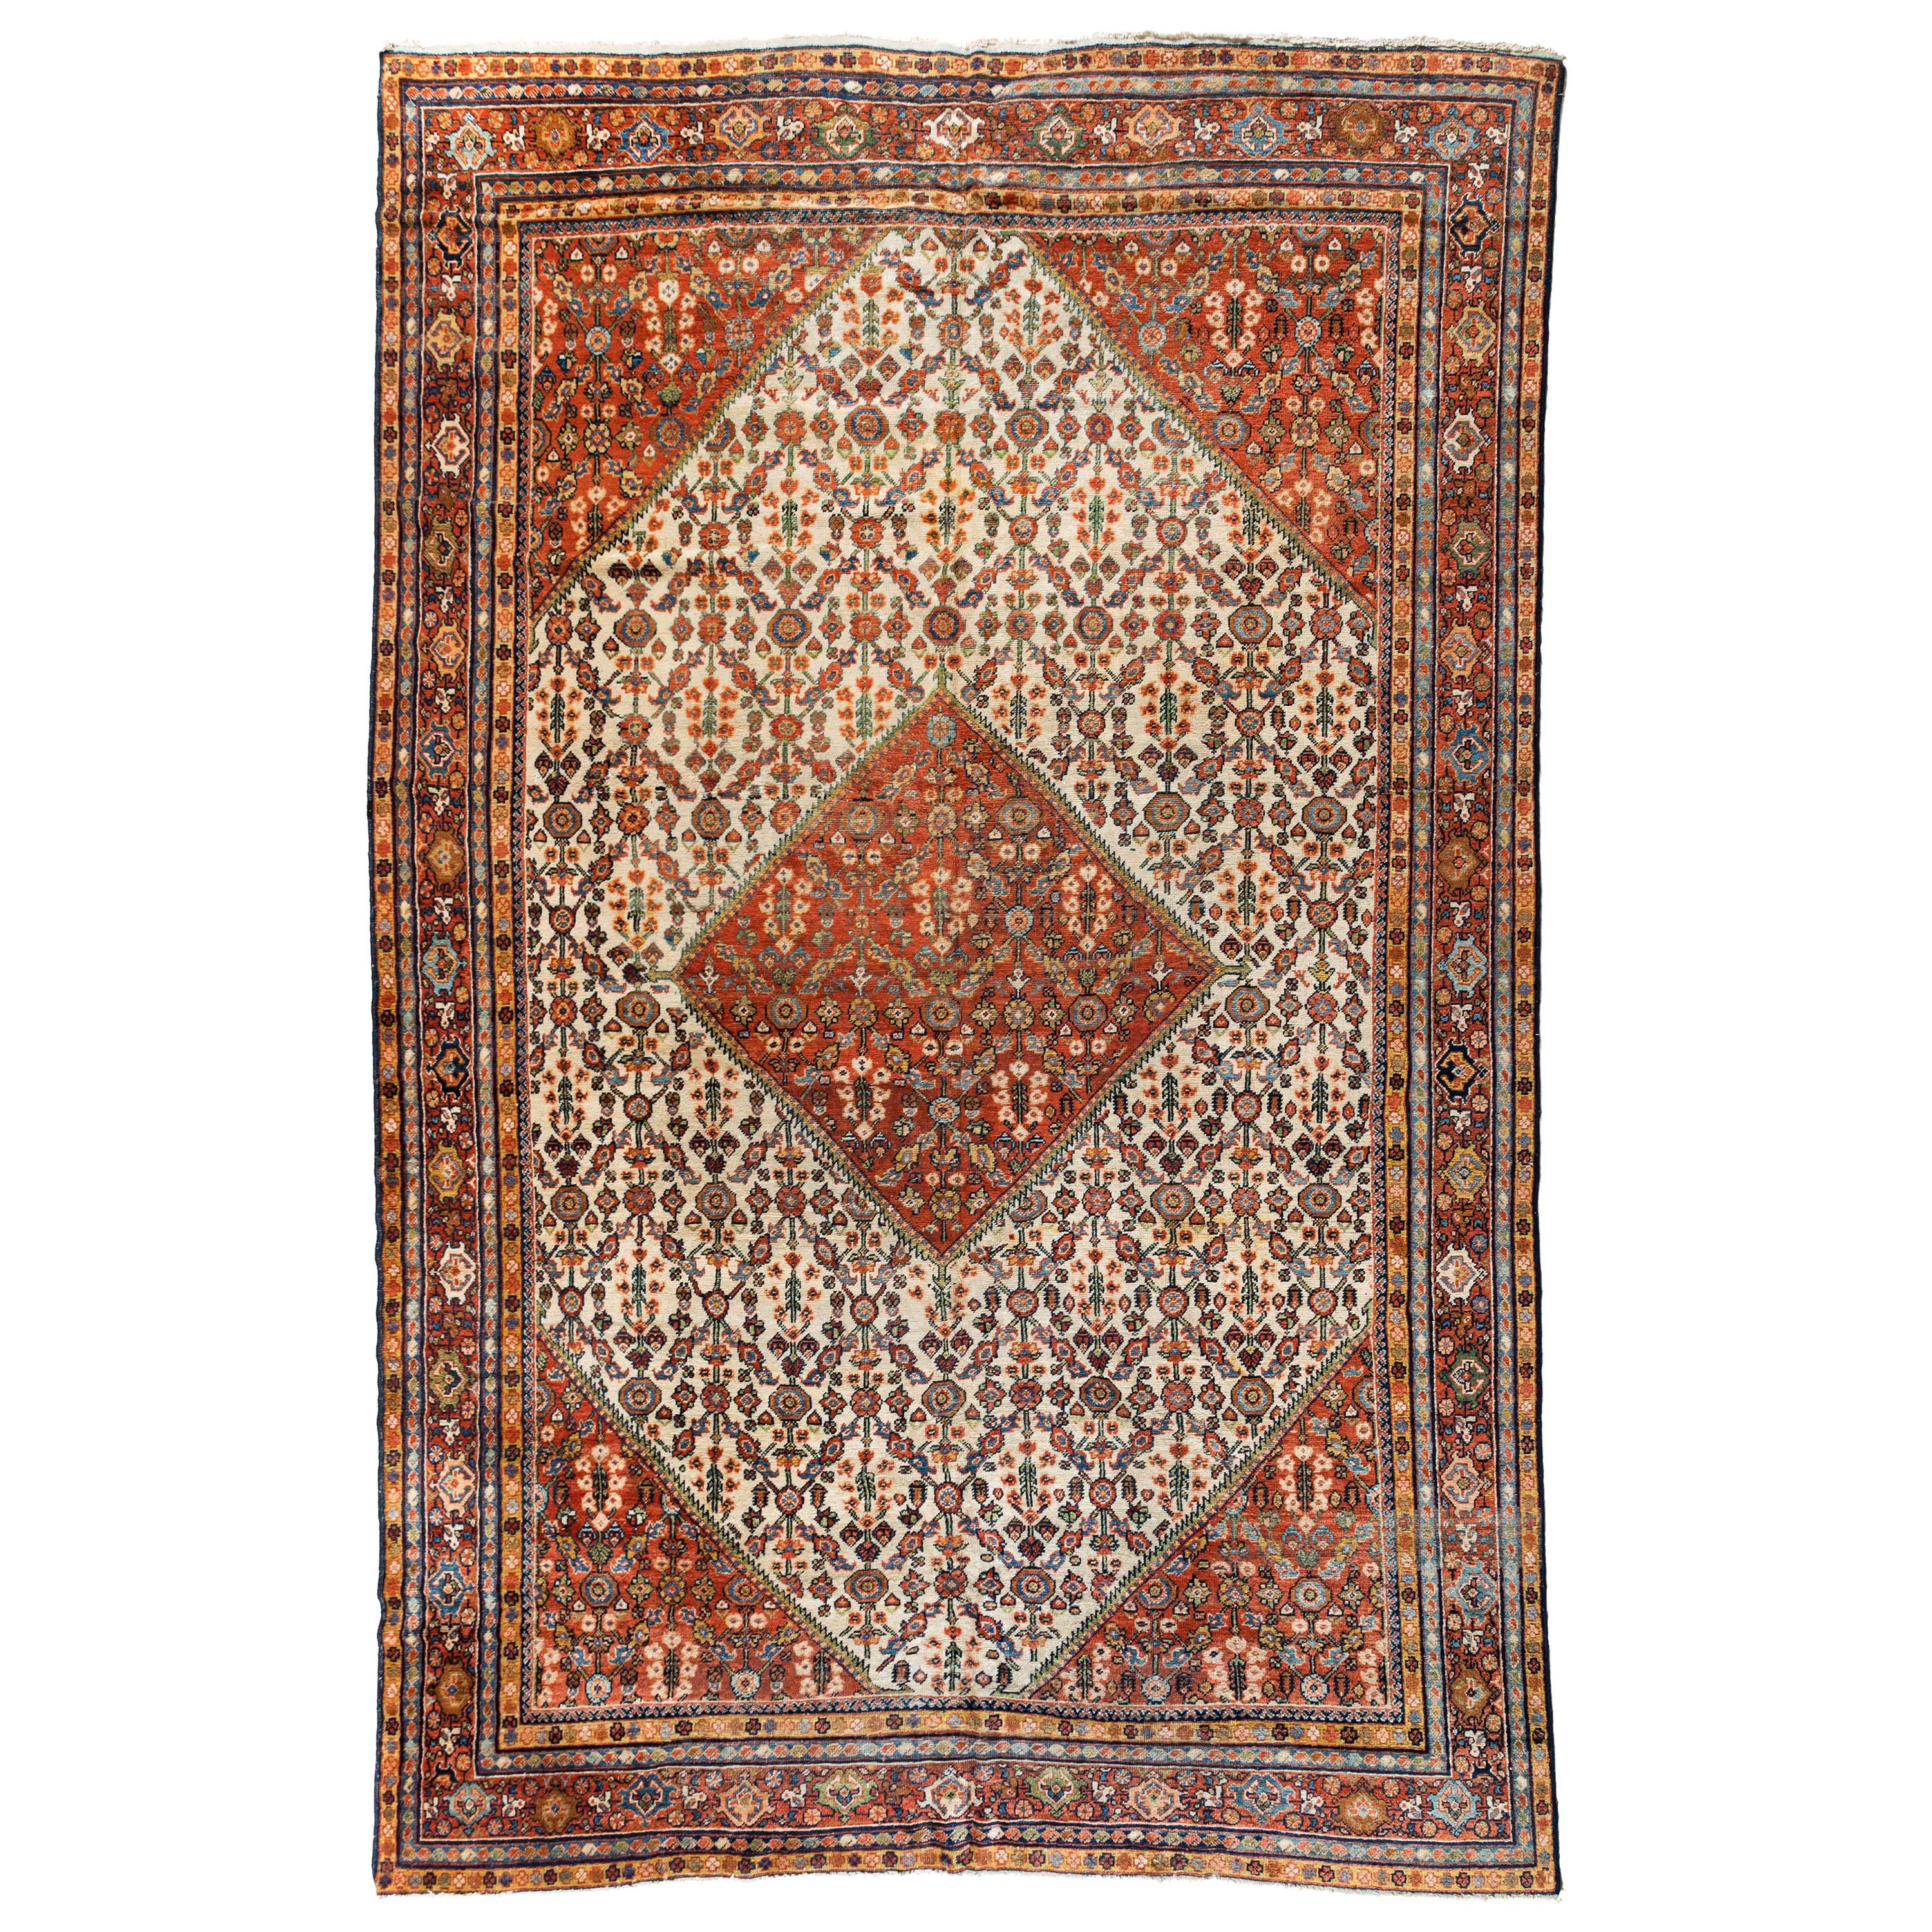 Persischer Mahal Ziegler-Teppich in Elfenbein, Beige und Rost, um 1900-1920